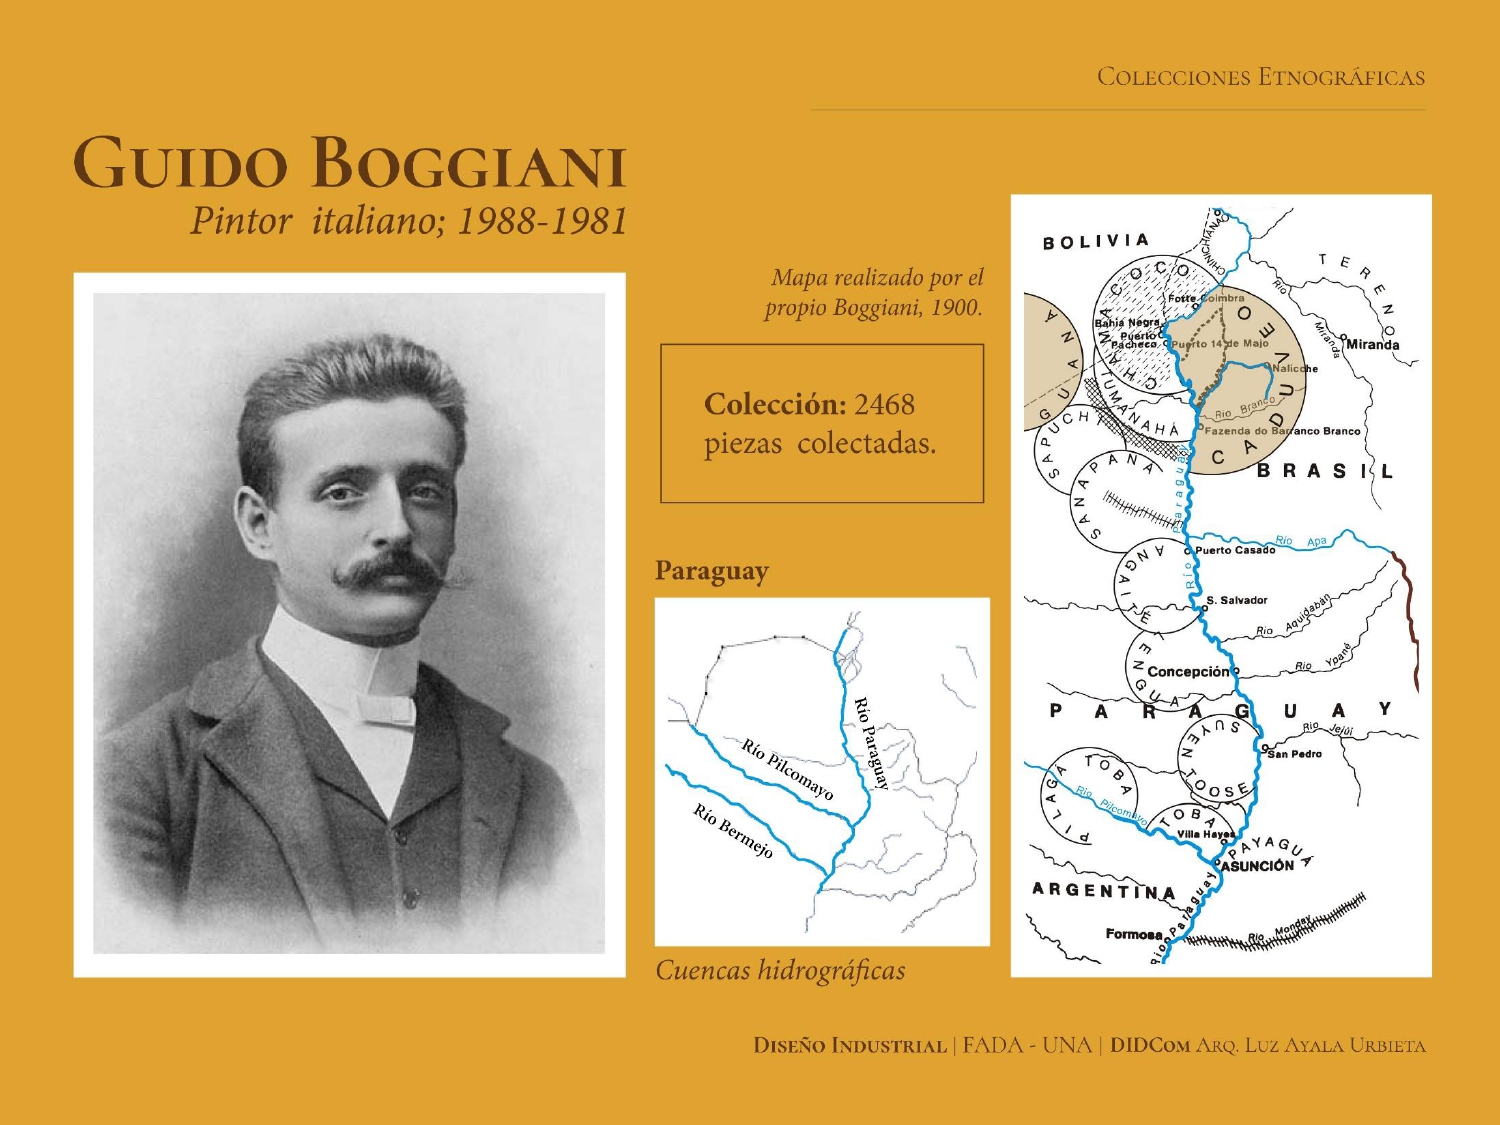 Presentación de la investigación, diapositiva sobre Guido Boggiani